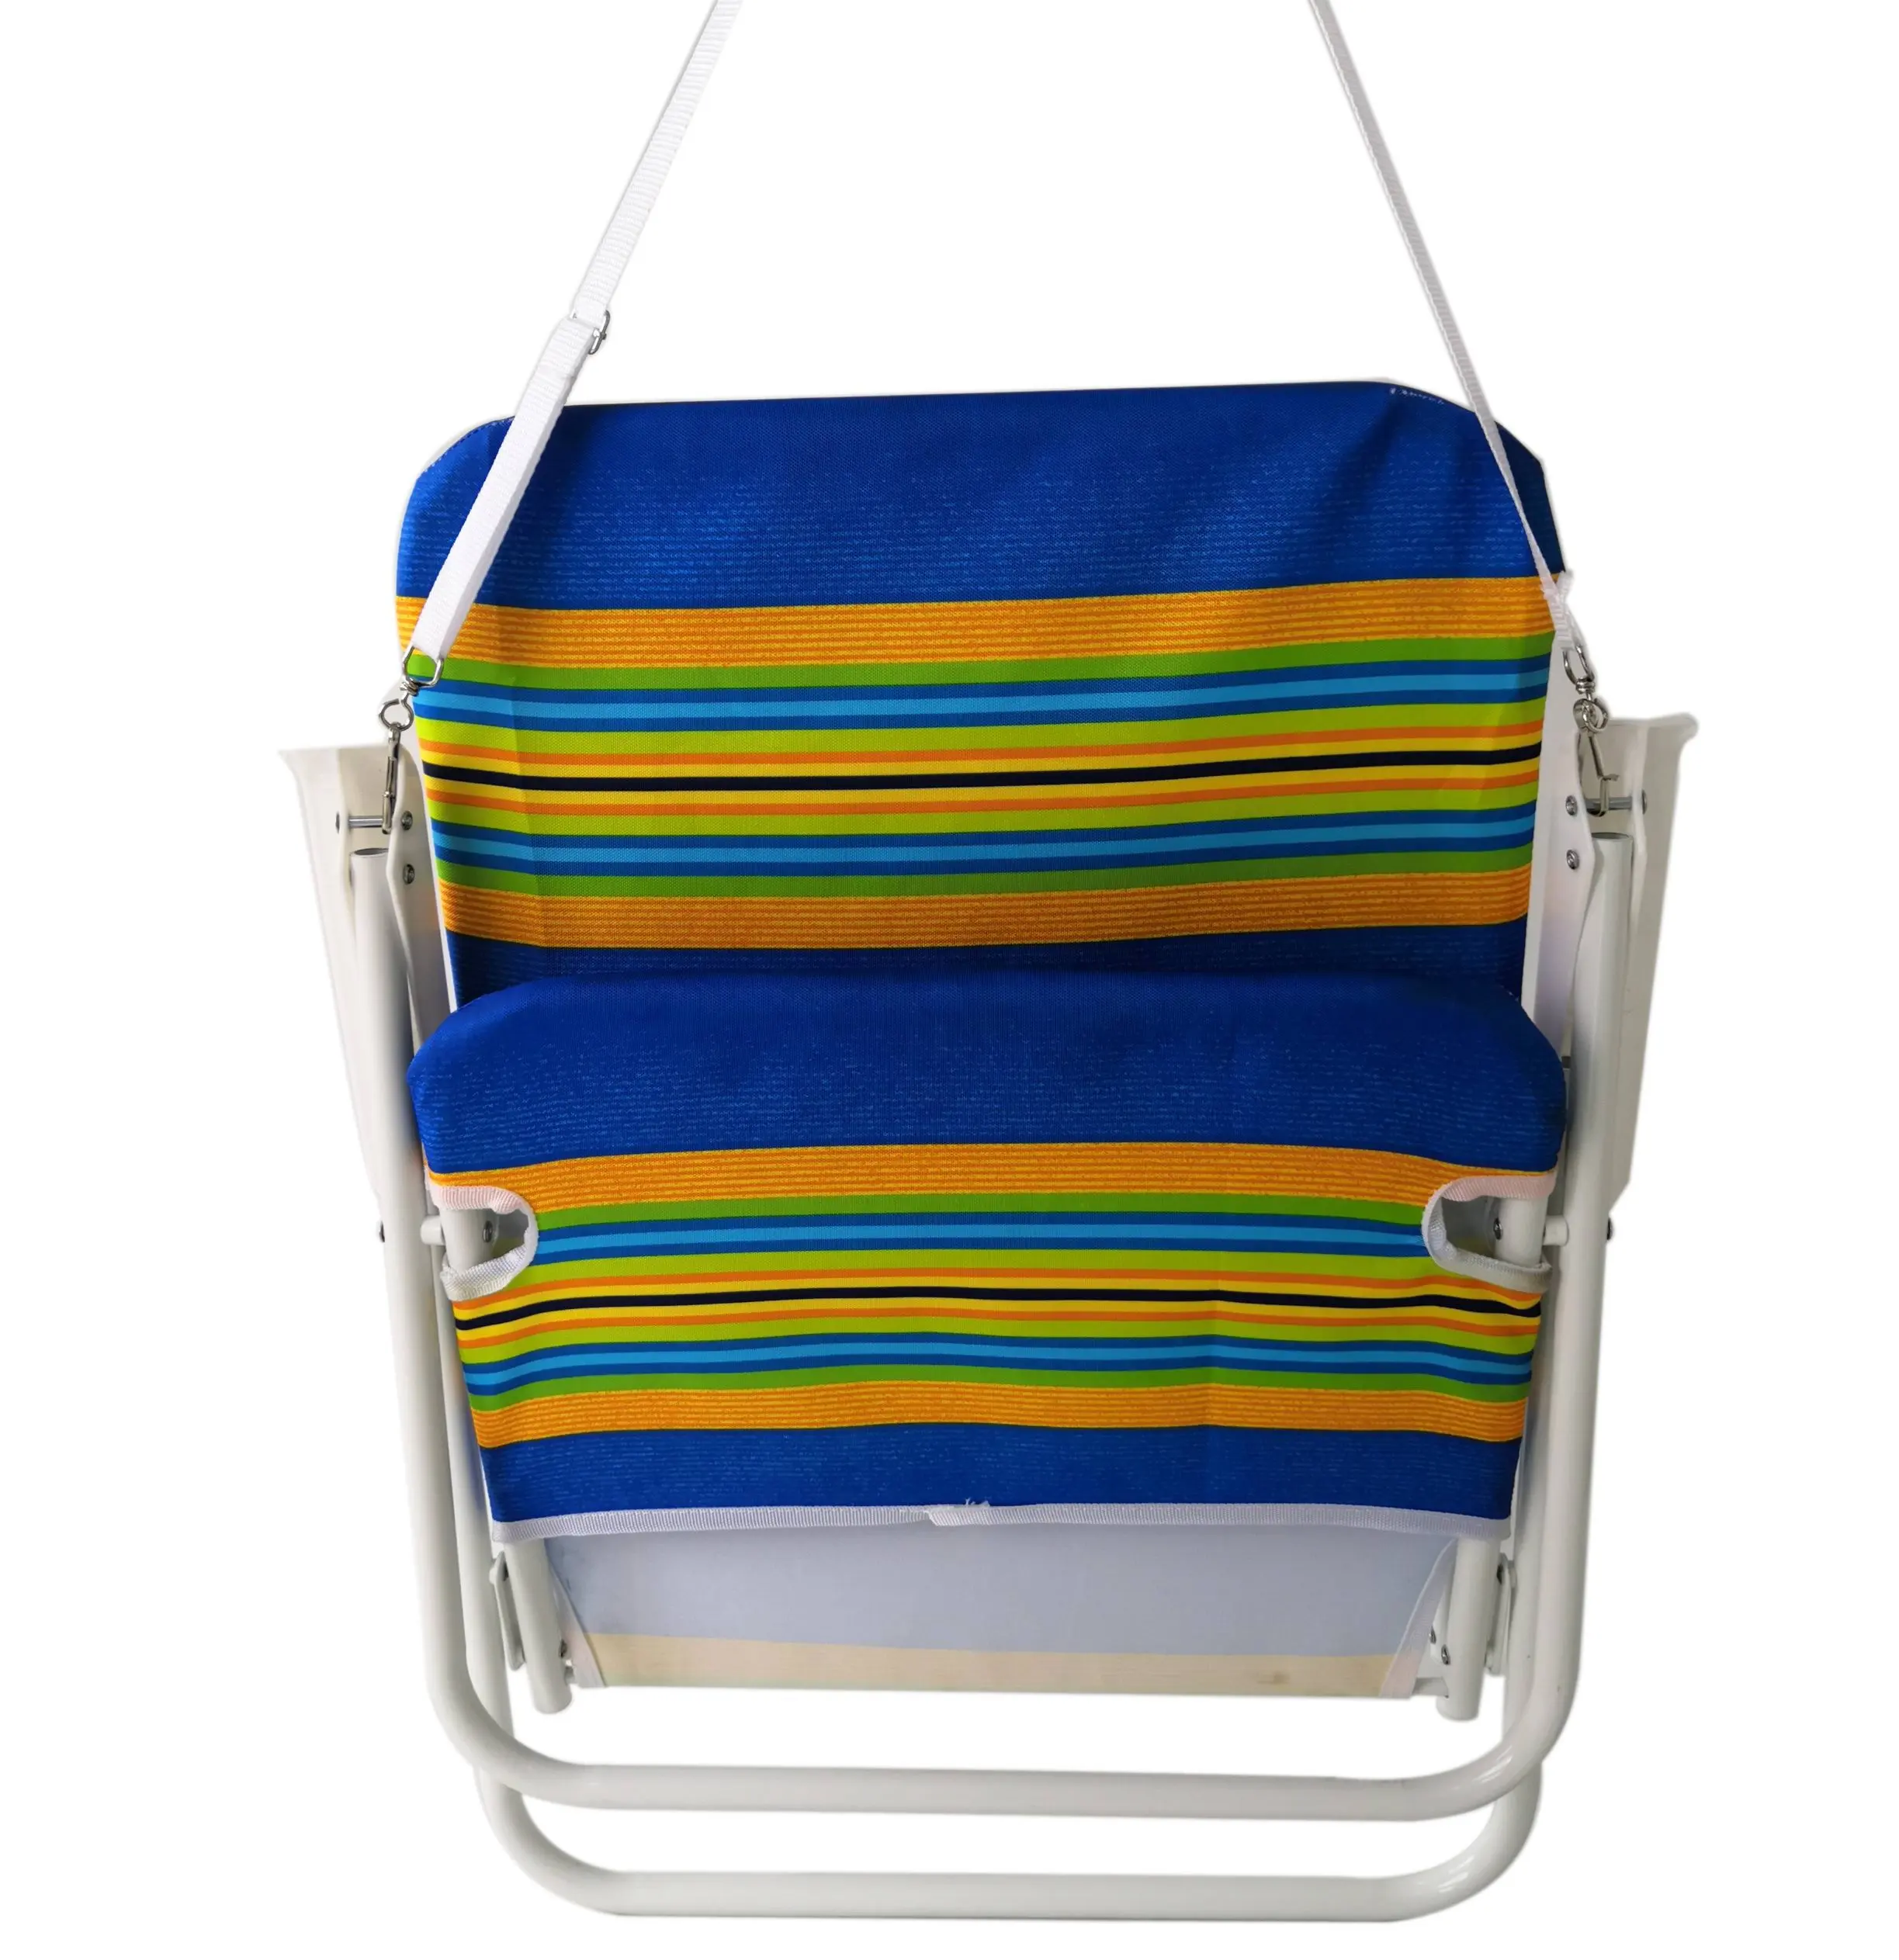 Mobilia pieghevole pieghevole dell'imballaggio del metallo della borsa della sedia di spiaggia di alluminio all'ingrosso del salotto all'aperto della molla regolabile a buon mercato